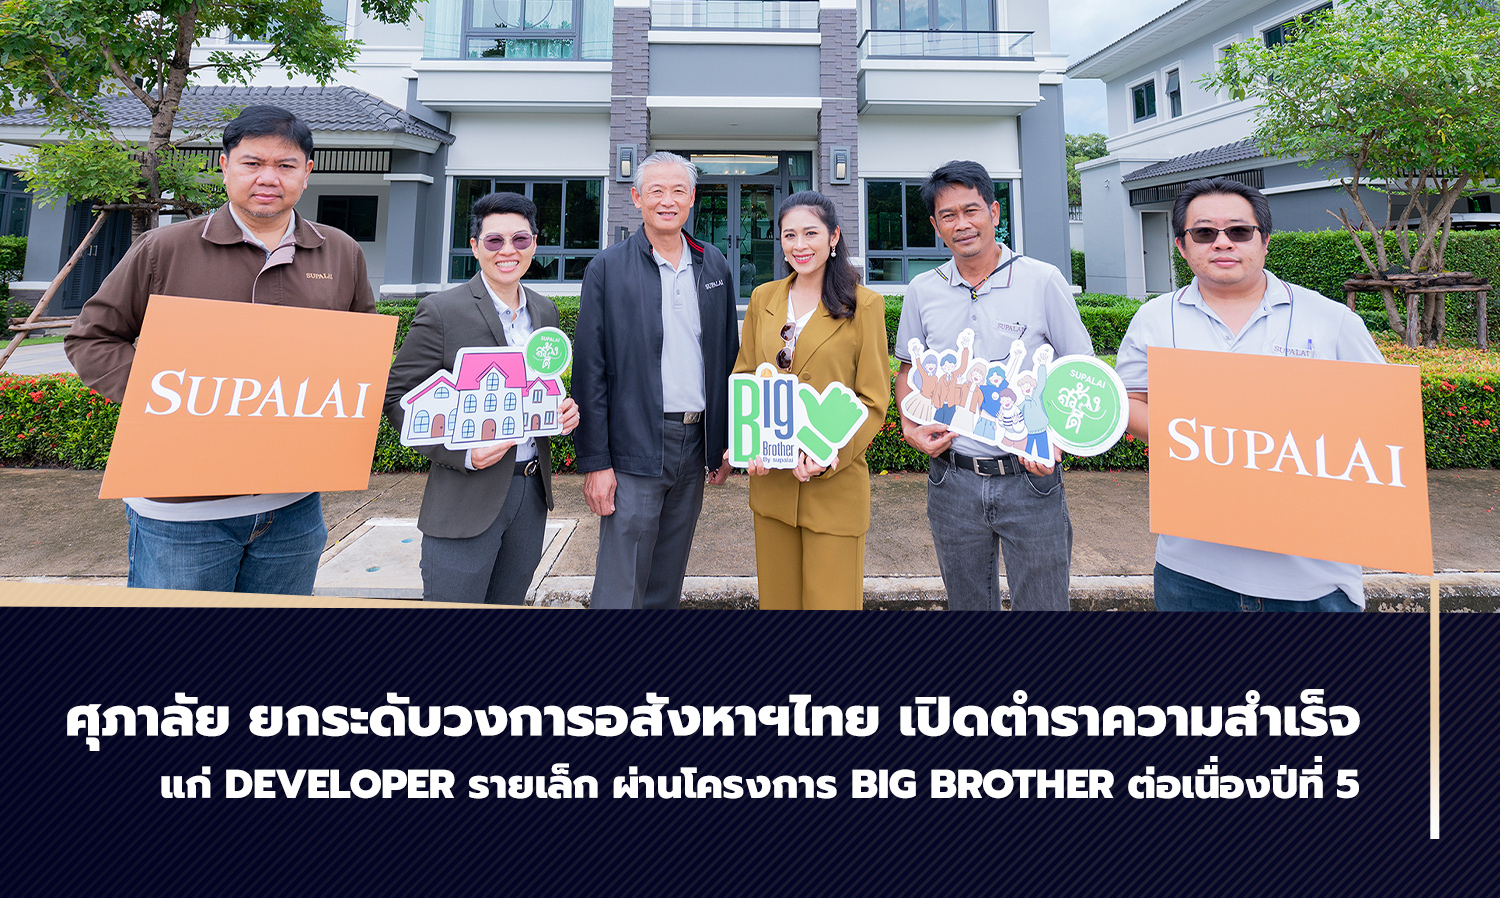 ศุภาลัย ยกระดับวงการอสังหาฯไทย เปิดตำราความสำเร็จแก่ Developer รายเล็ก ผ่านโครงการ Big Brother ต่อเนื่องปีที่ 5